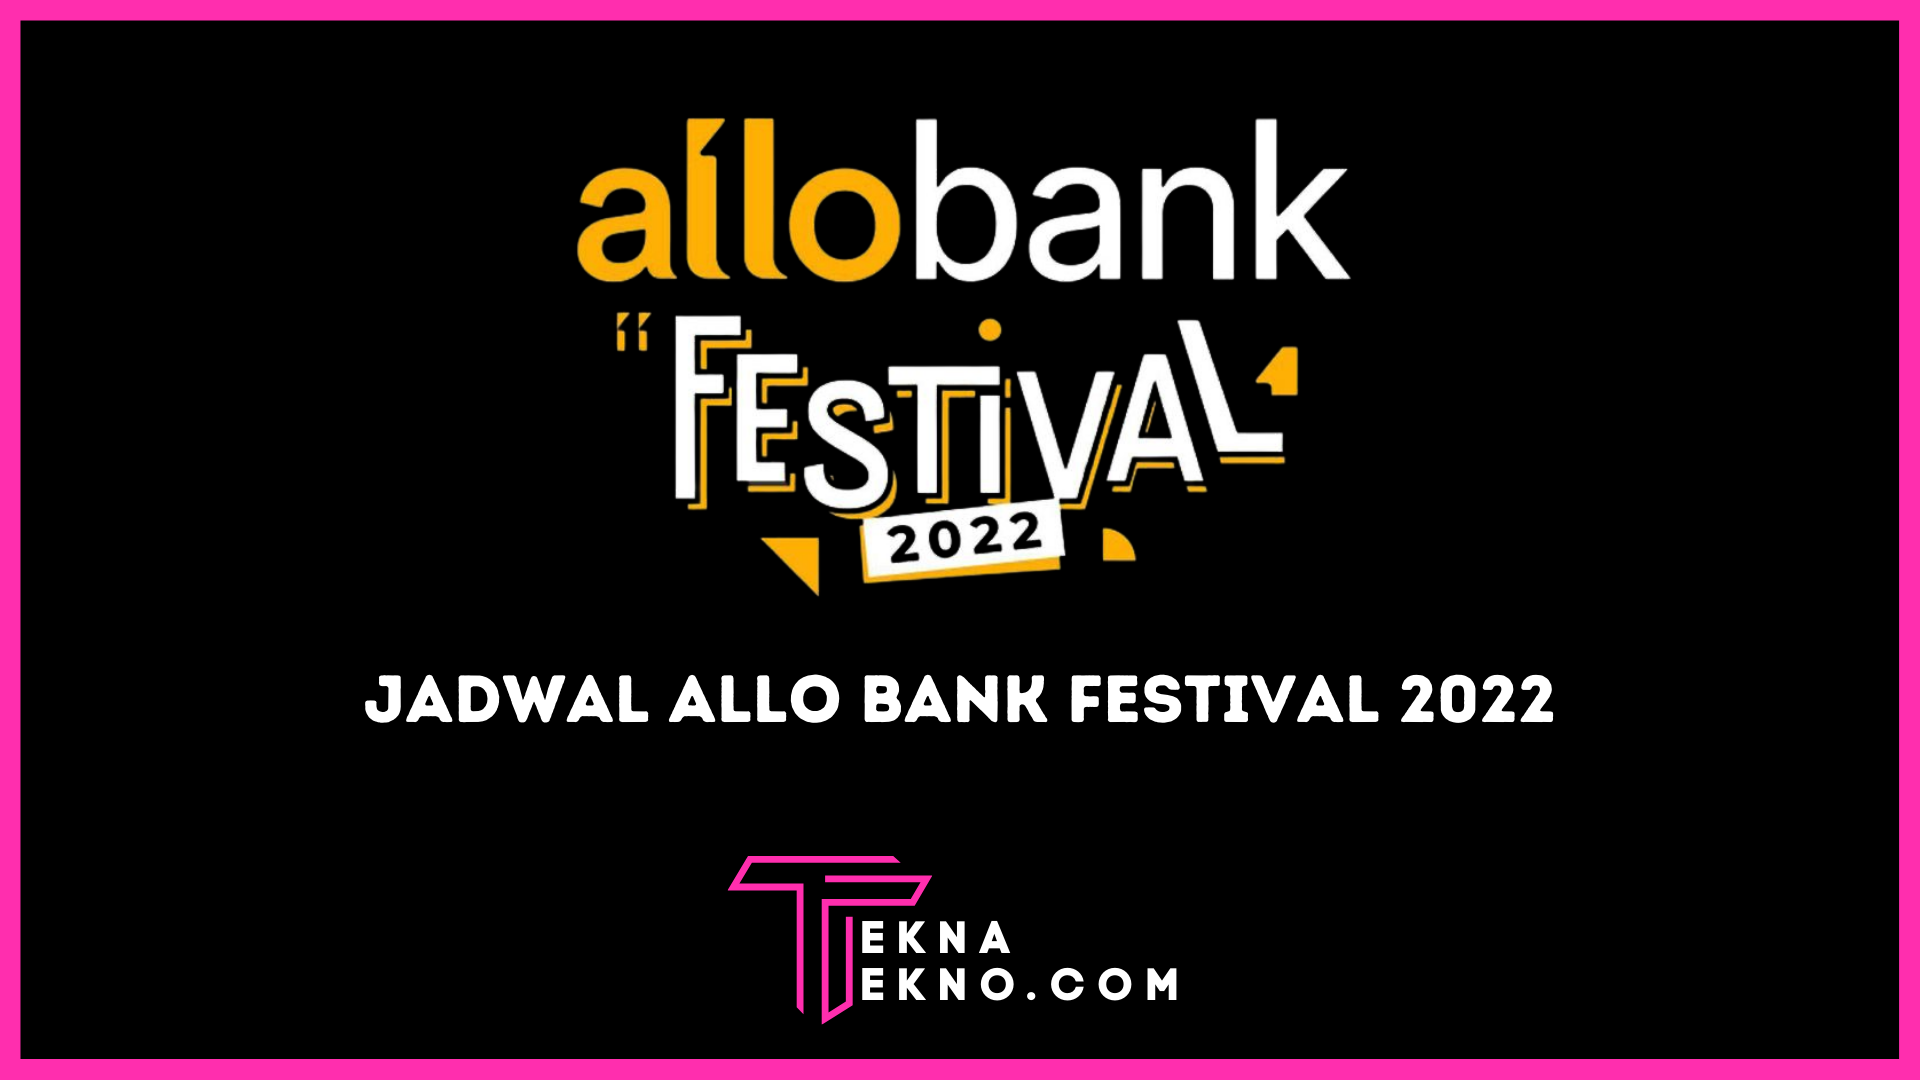 Cek Harga Tiket dan Jadwal Allo Bank Festival 2022